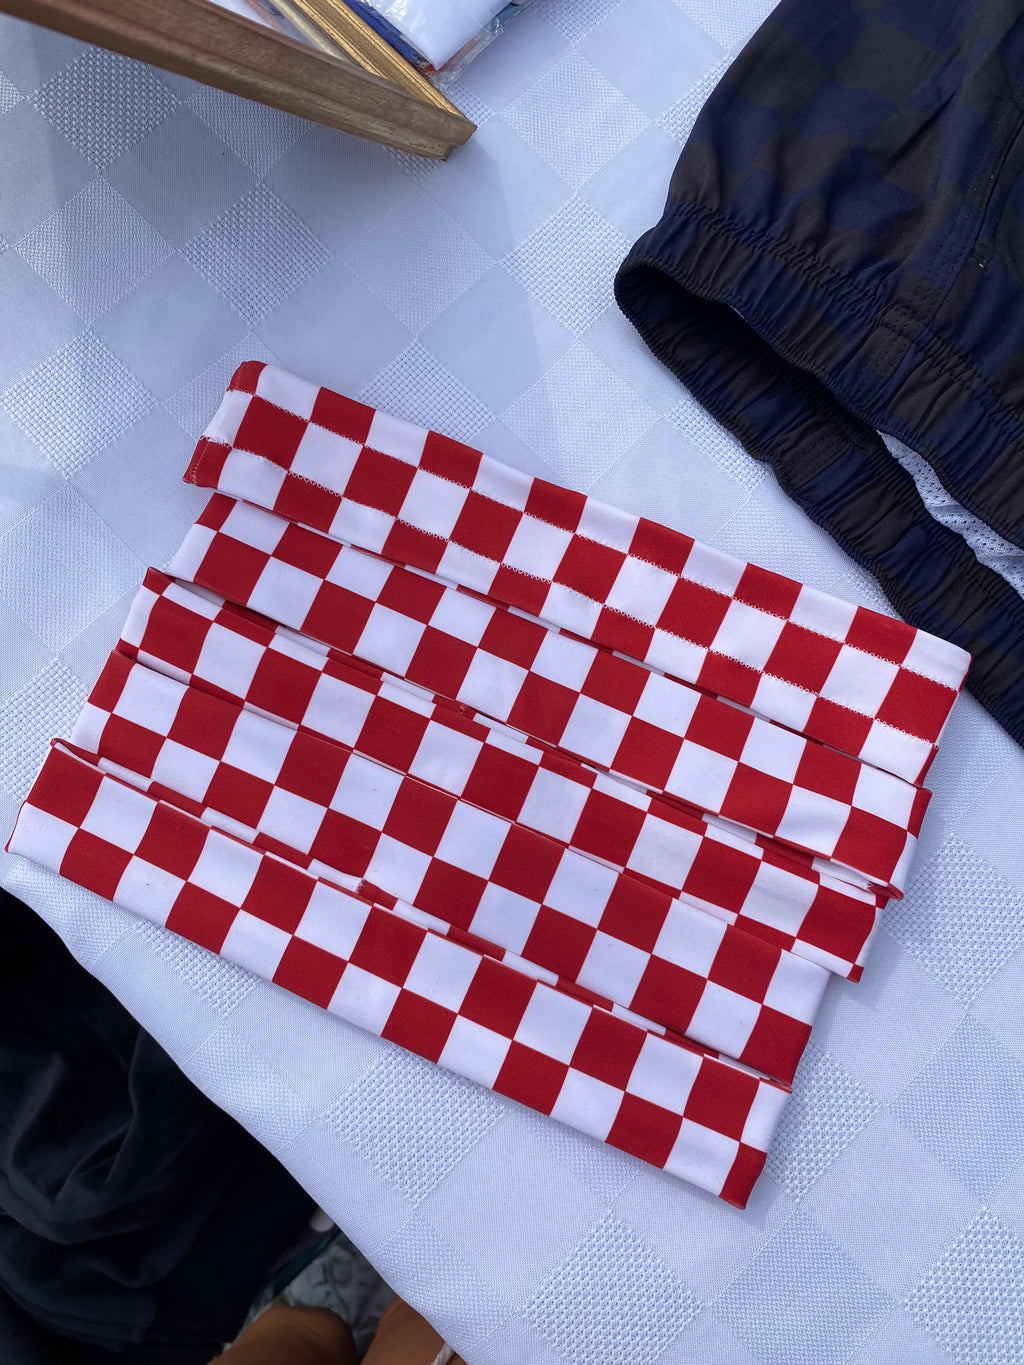 Red and white checkered headband